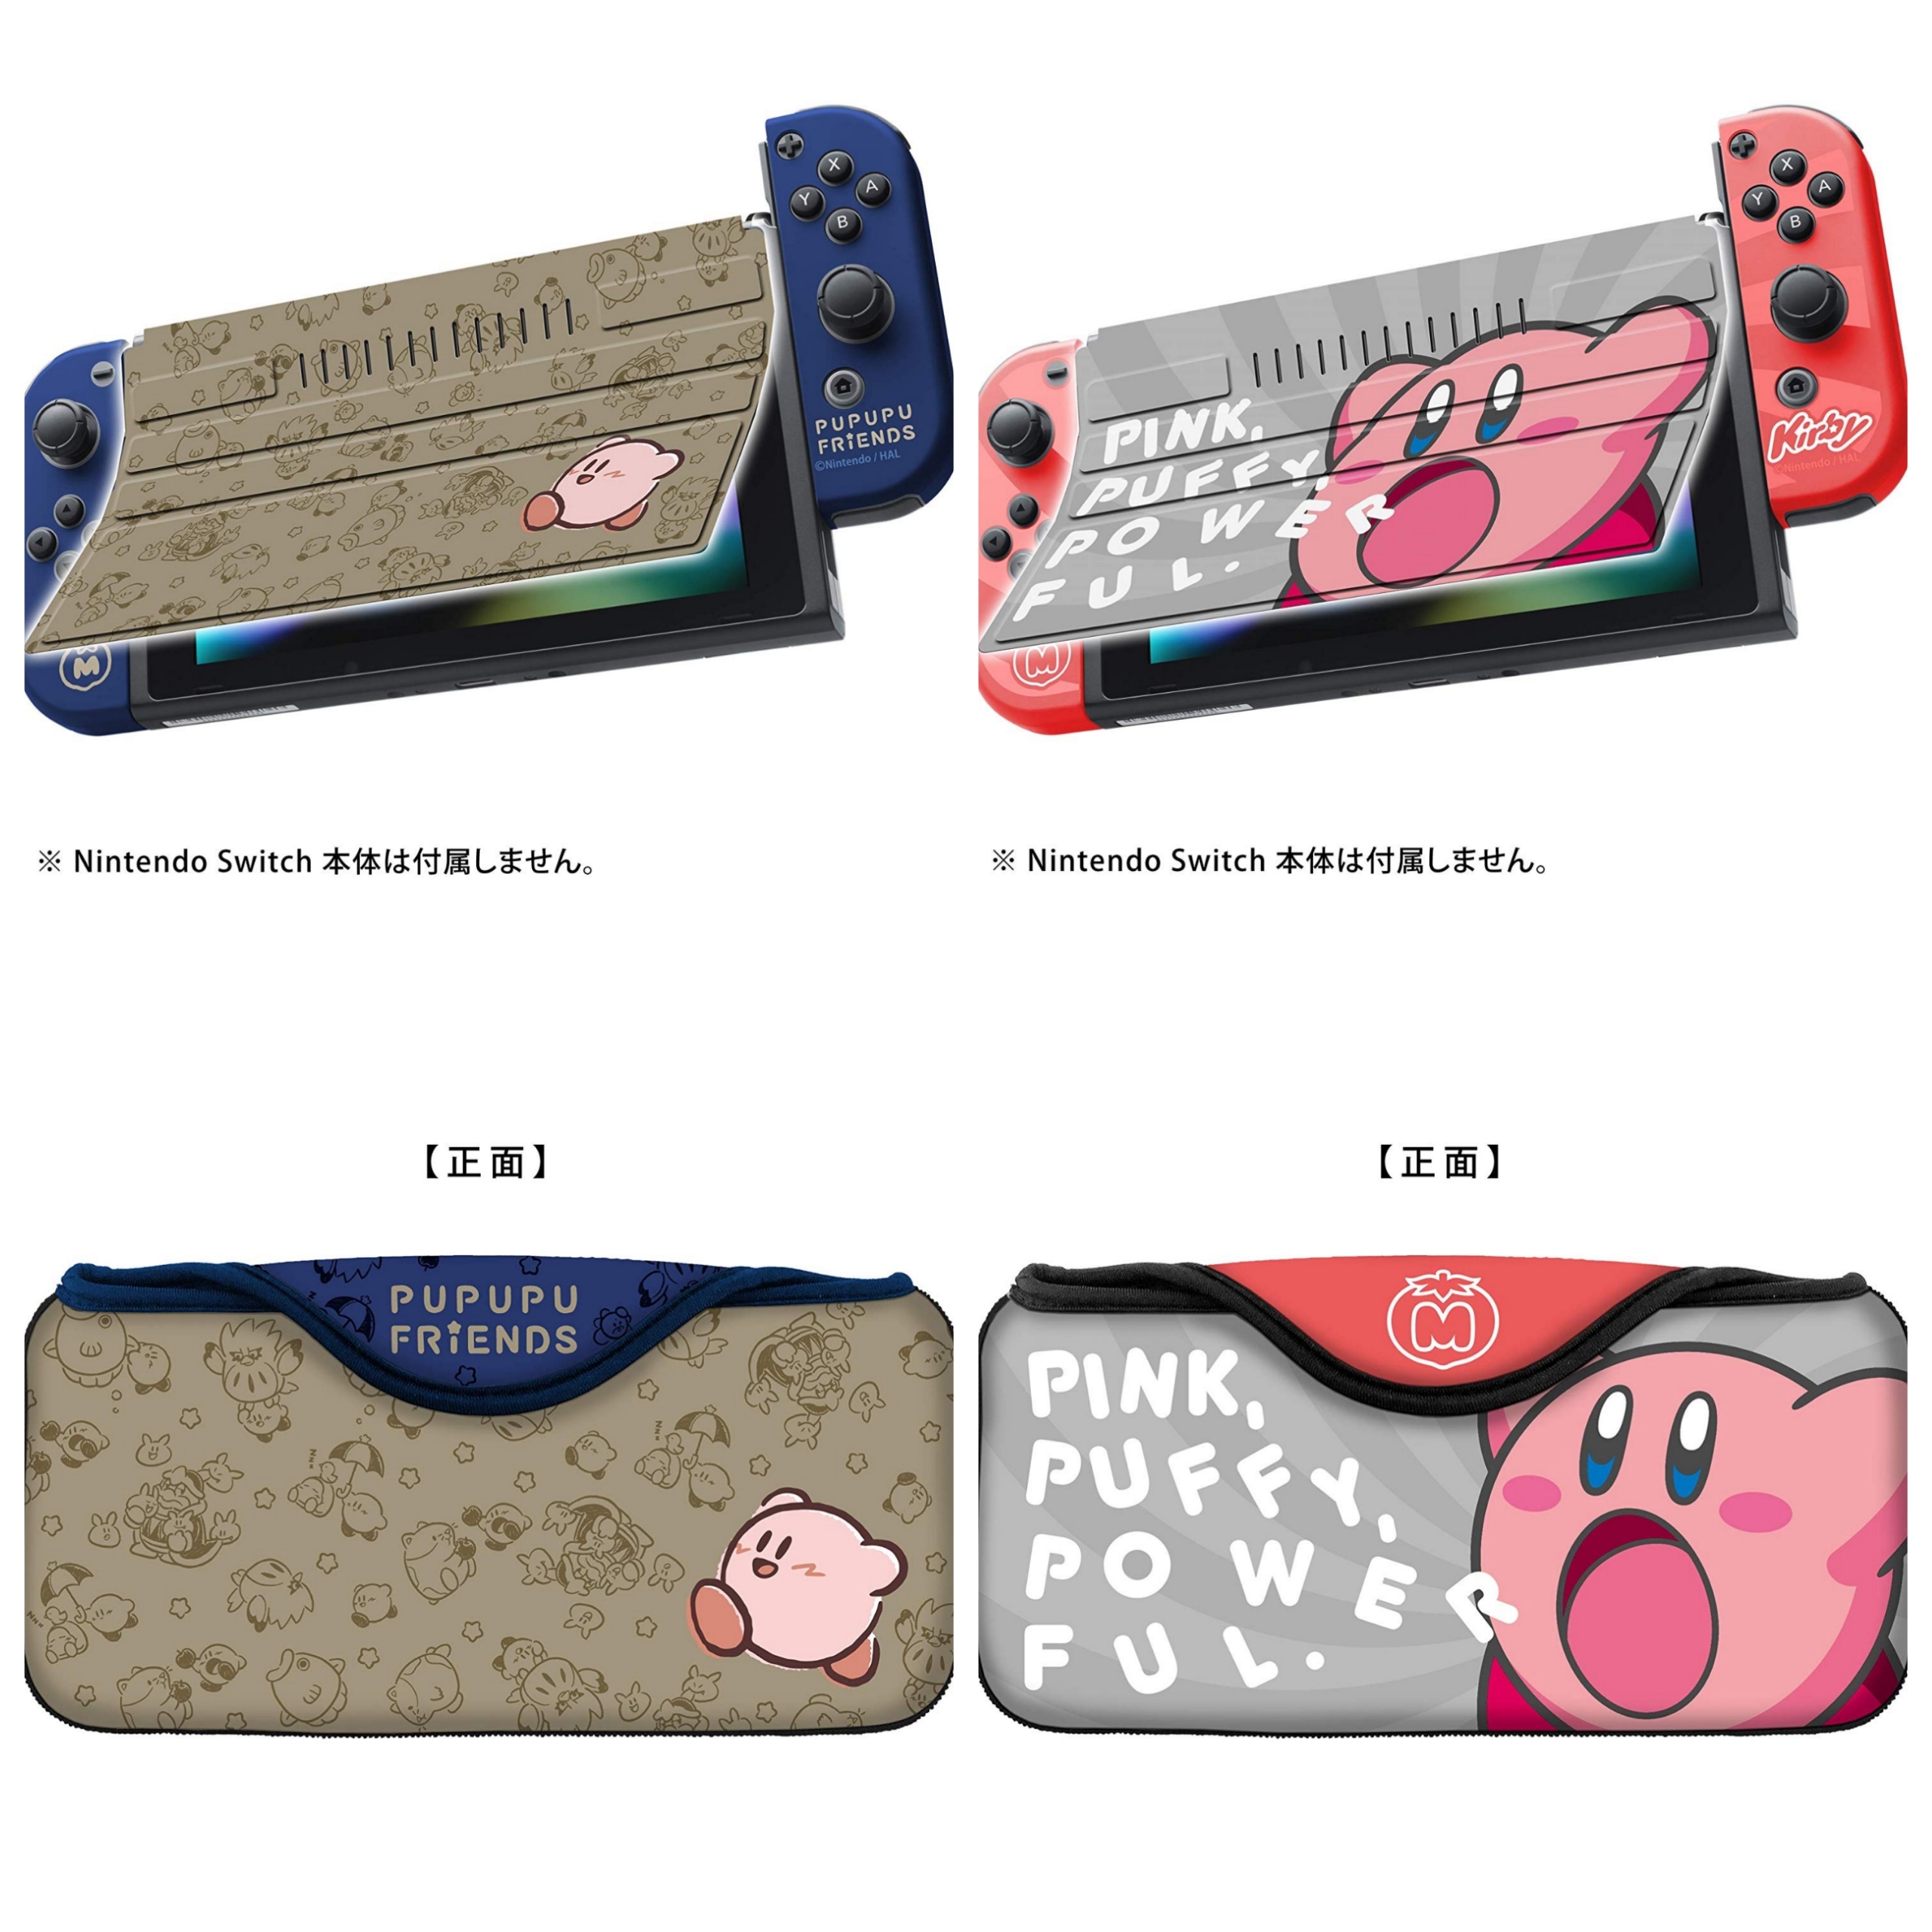 6/16】Nintendo Switchの保護カバーと保護ポーチの『星のカービィ』新デザインが登場! | 星霜のカービィ 物置部屋